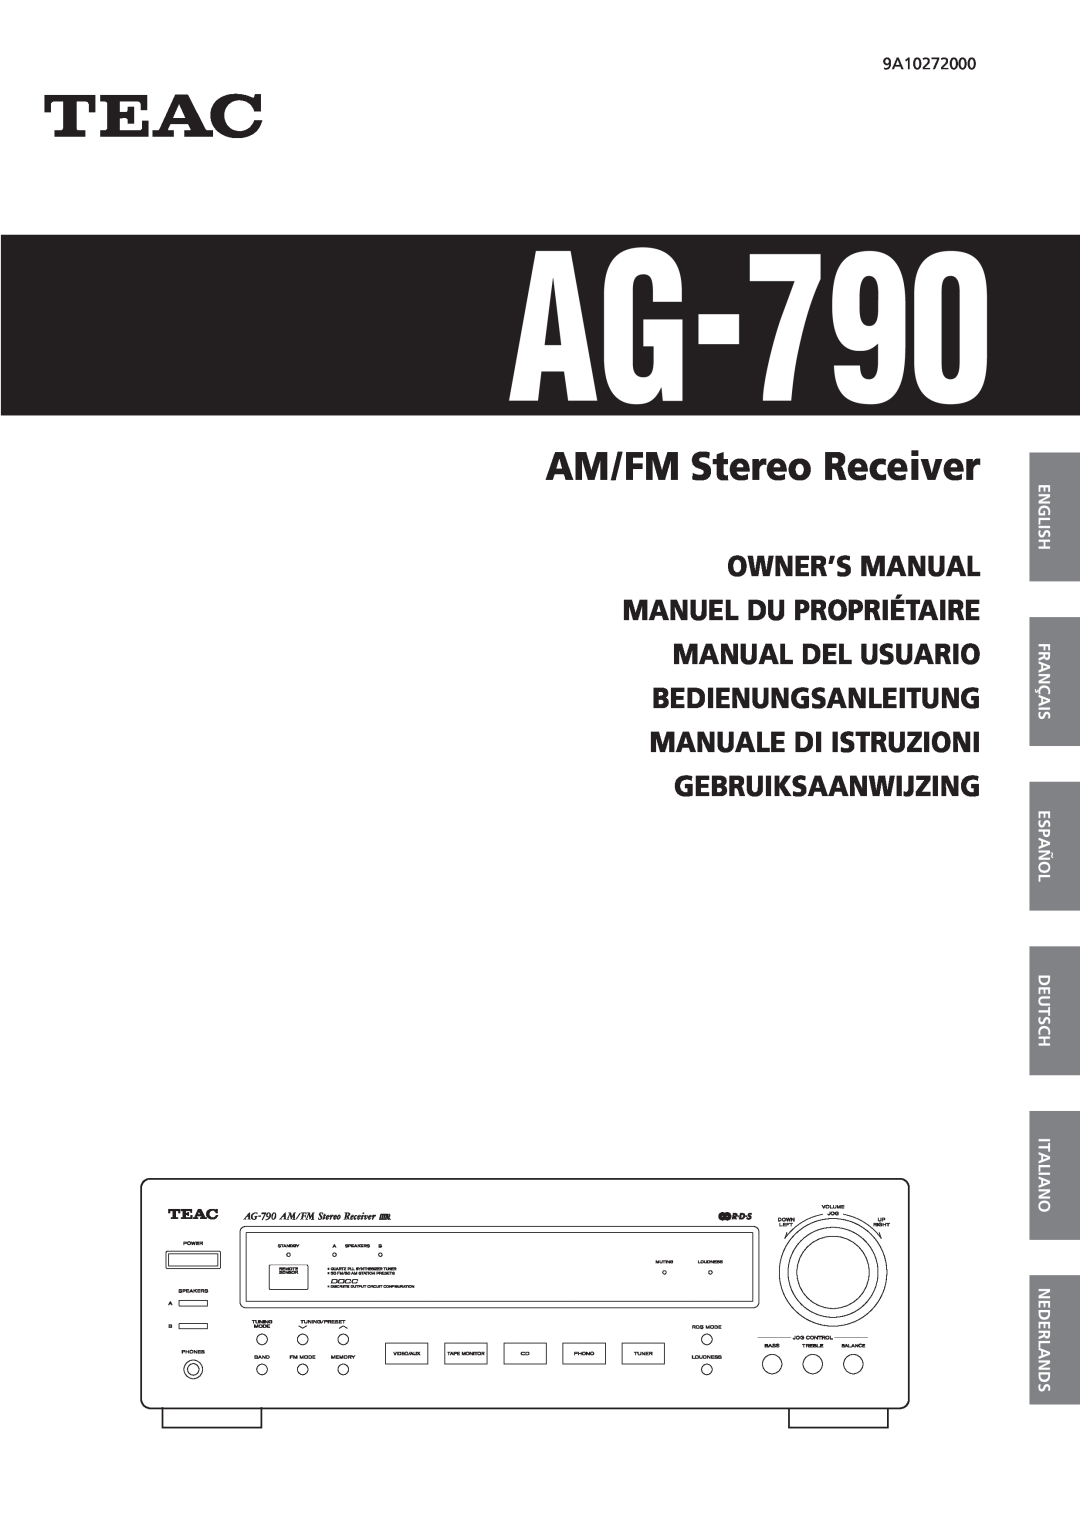 Teac AG-790 owner manual English, Français, AM/FM Stereo Receiver 